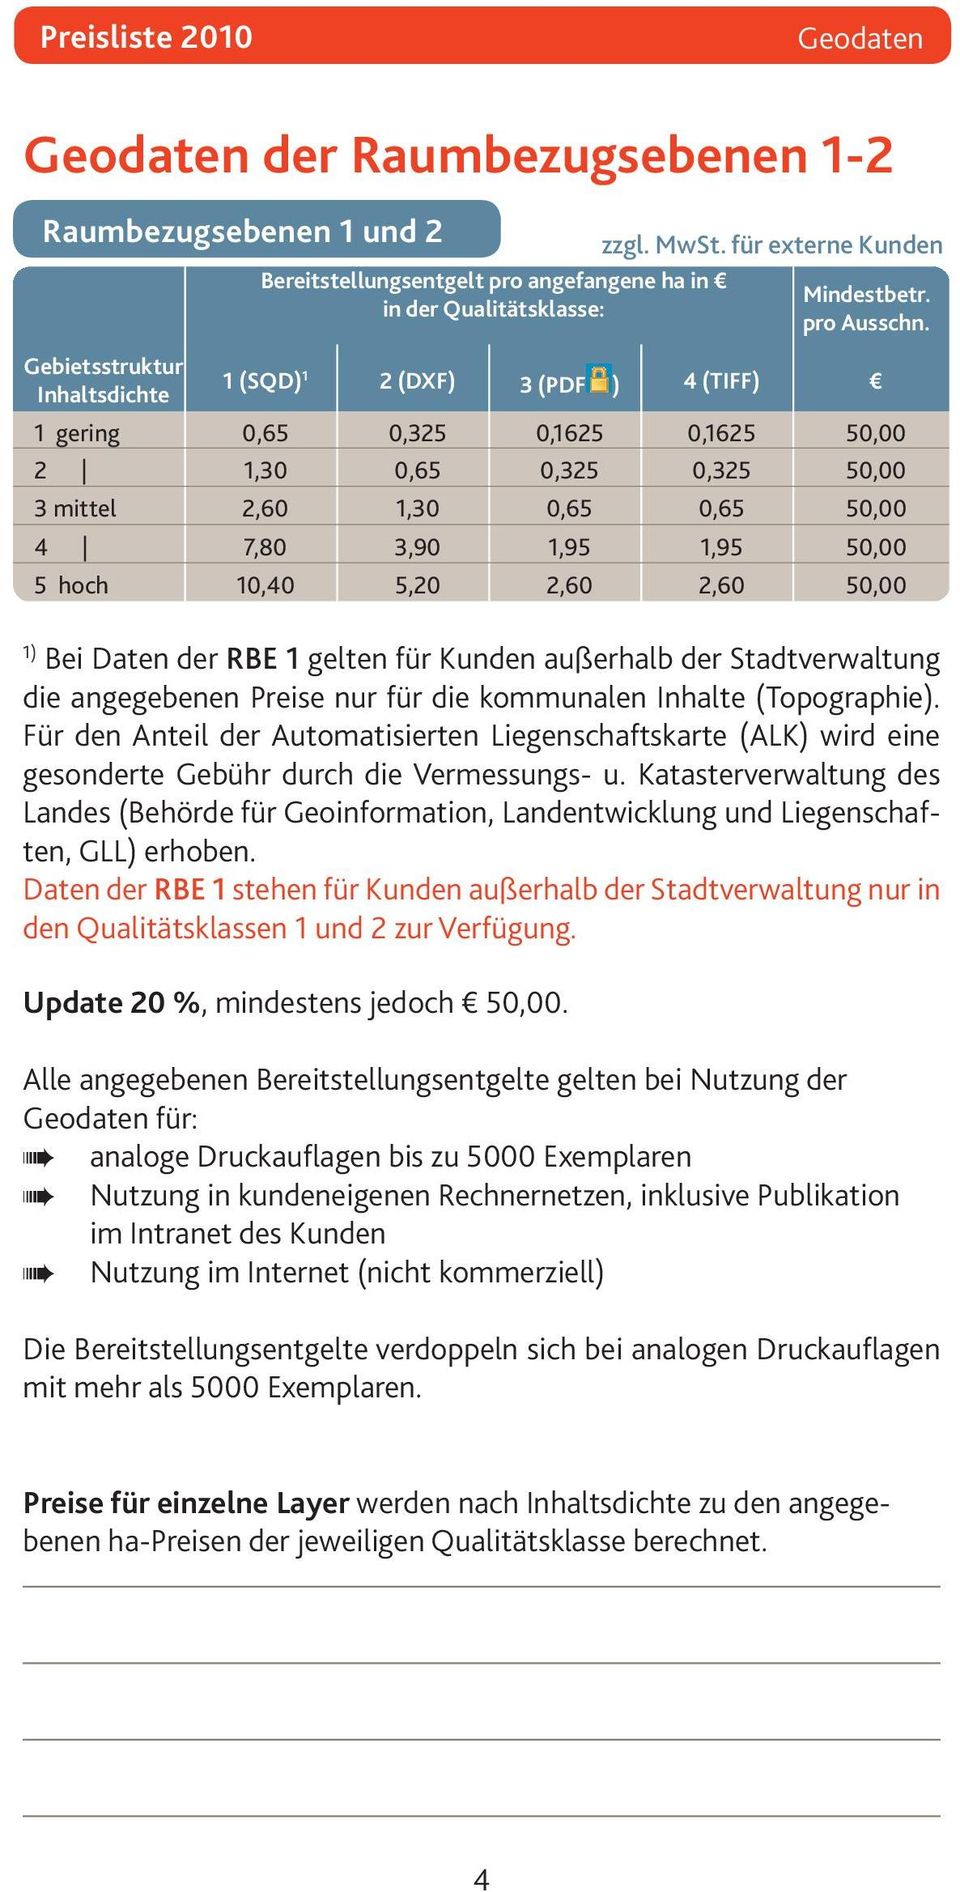 5 hoch 10,40 5,20 2,60 2,60 50,00 1) Bei Daten der RBE 1 gelten für Kunden außerhalb der Stadtverwaltung die angegebenen Preise nur für die kommunalen Inhalte (Topographie).